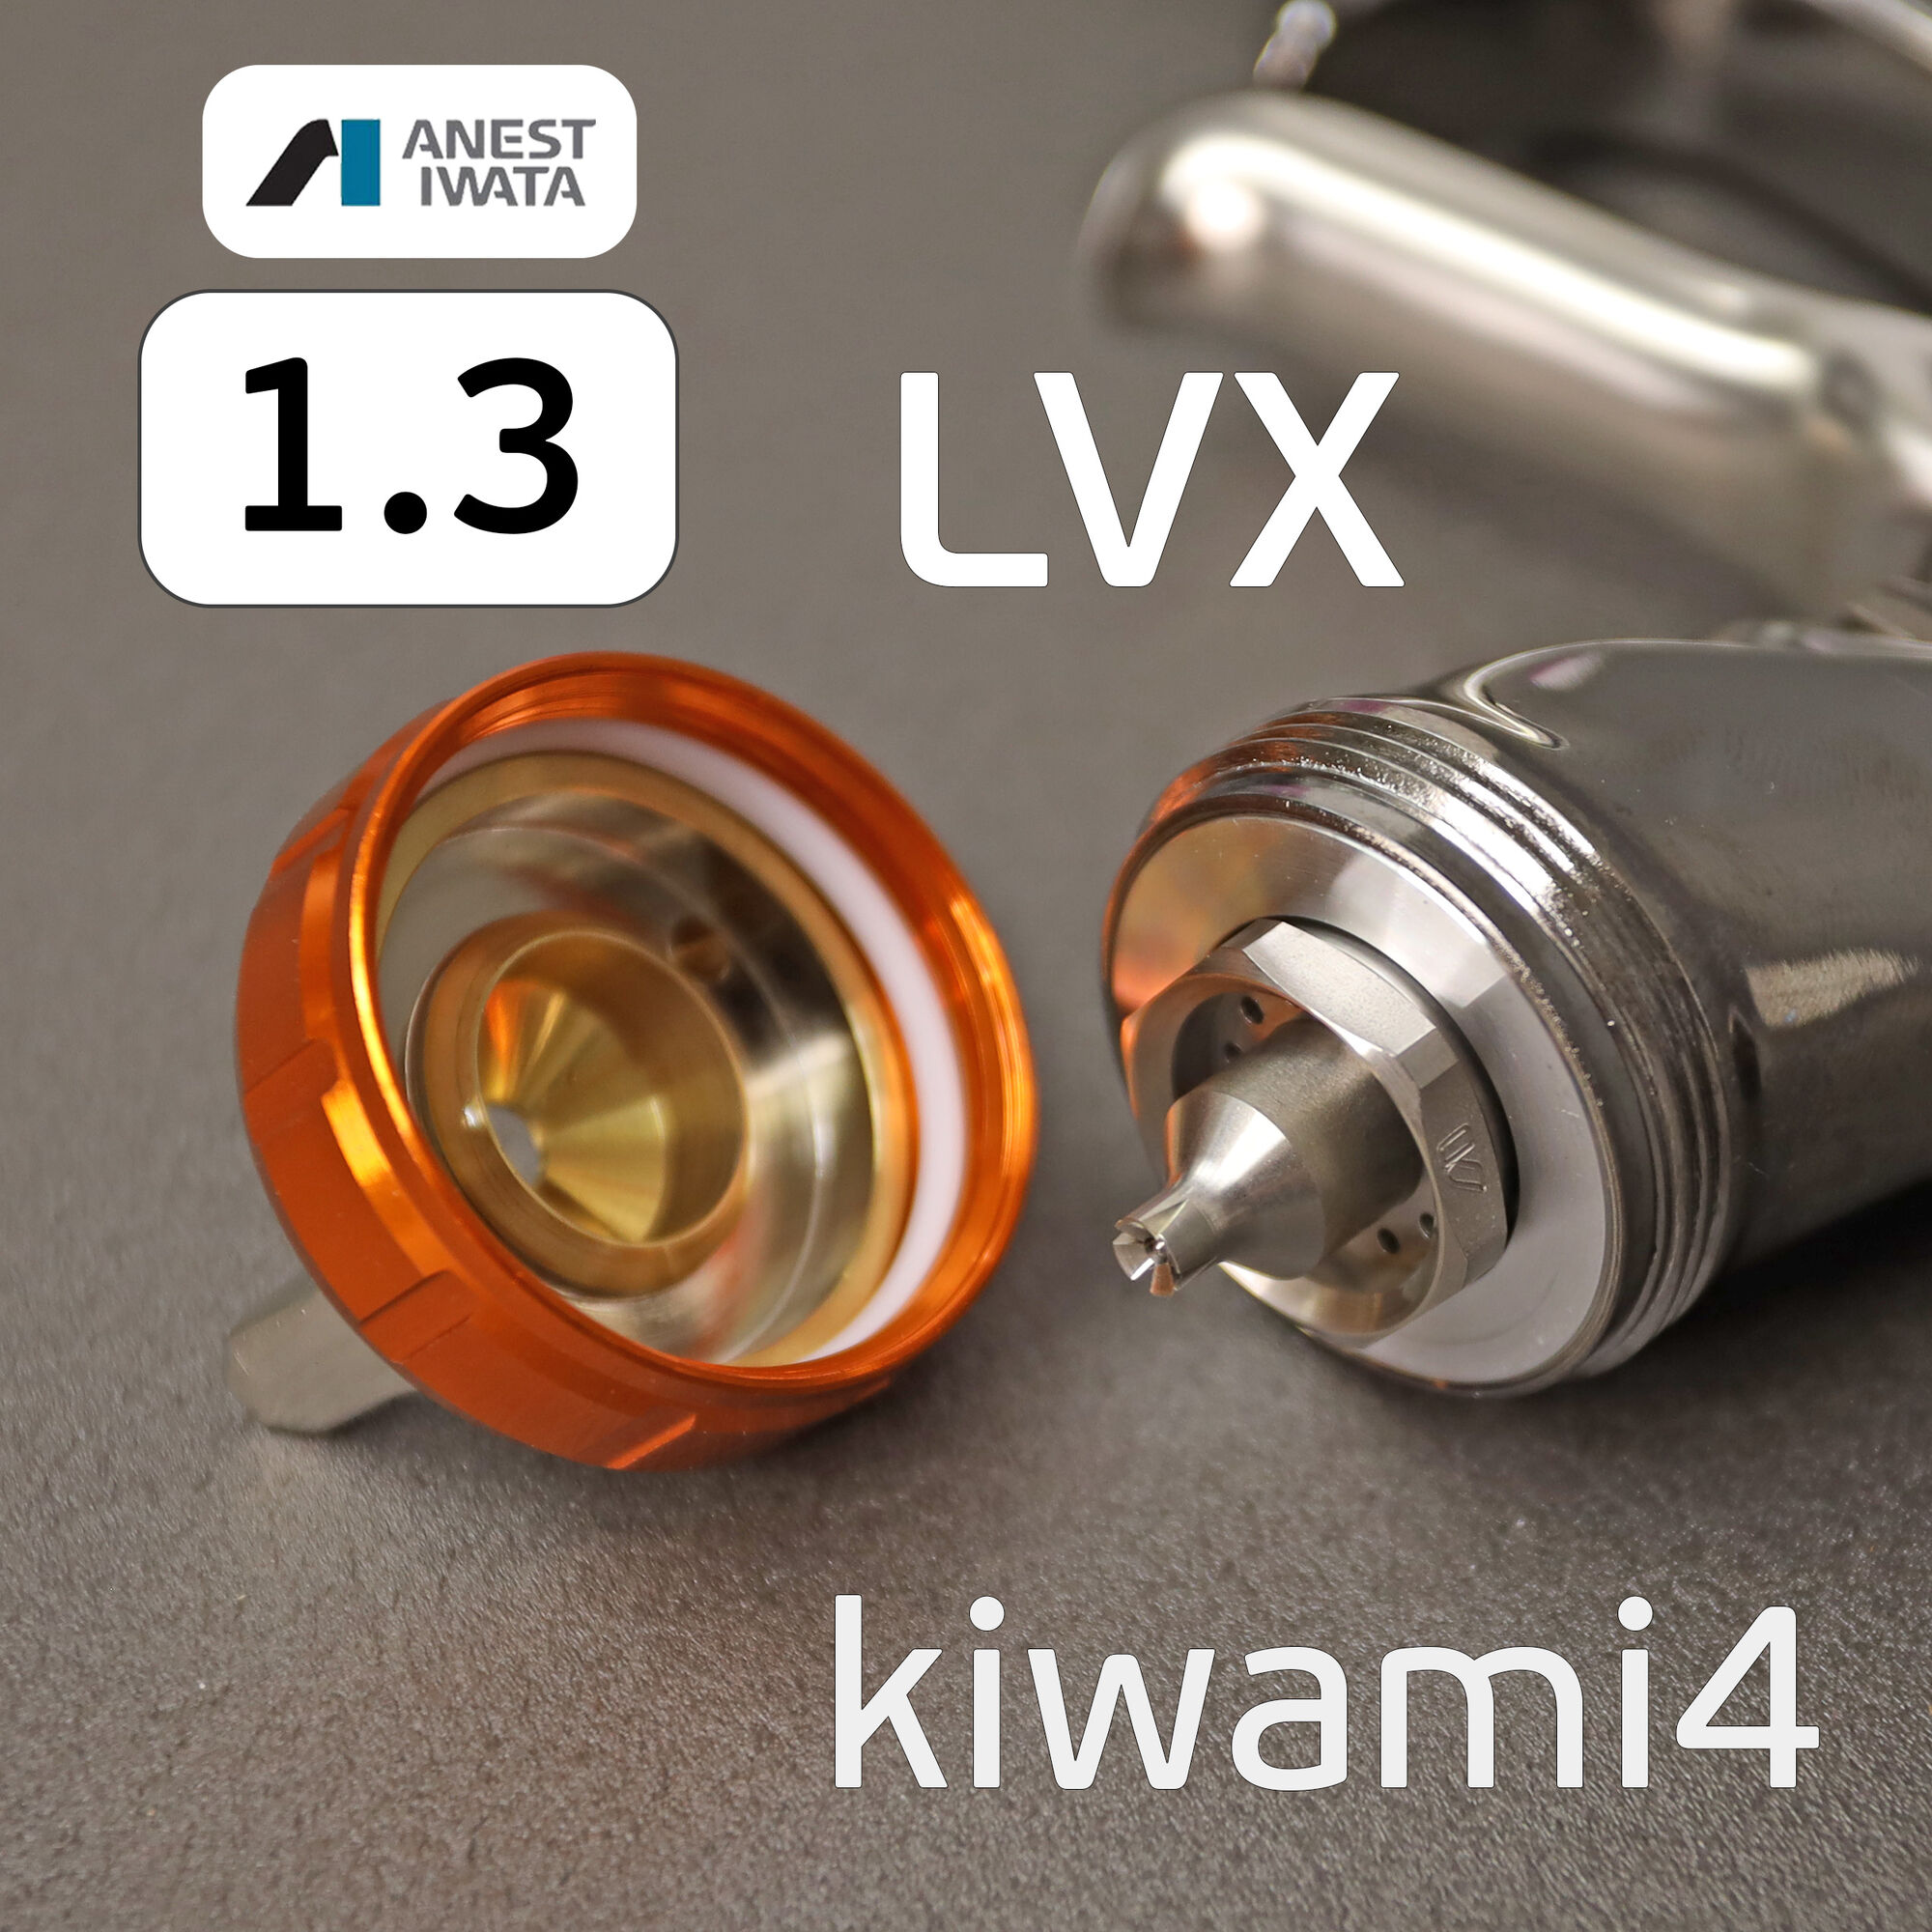 Краскопульт Anest Iwata Kiwami LVX (1.3мм) без бачка (разрезное сопло) NEW LPH-400 2